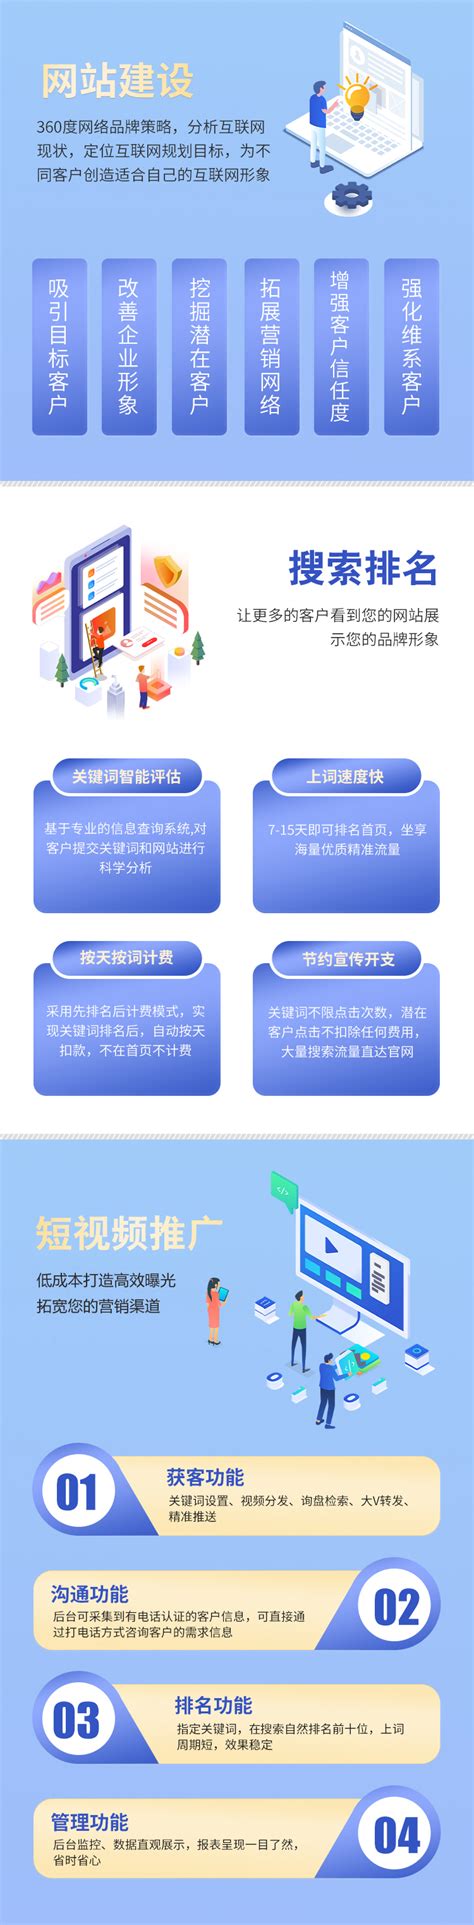 重庆网站建设及优化公司